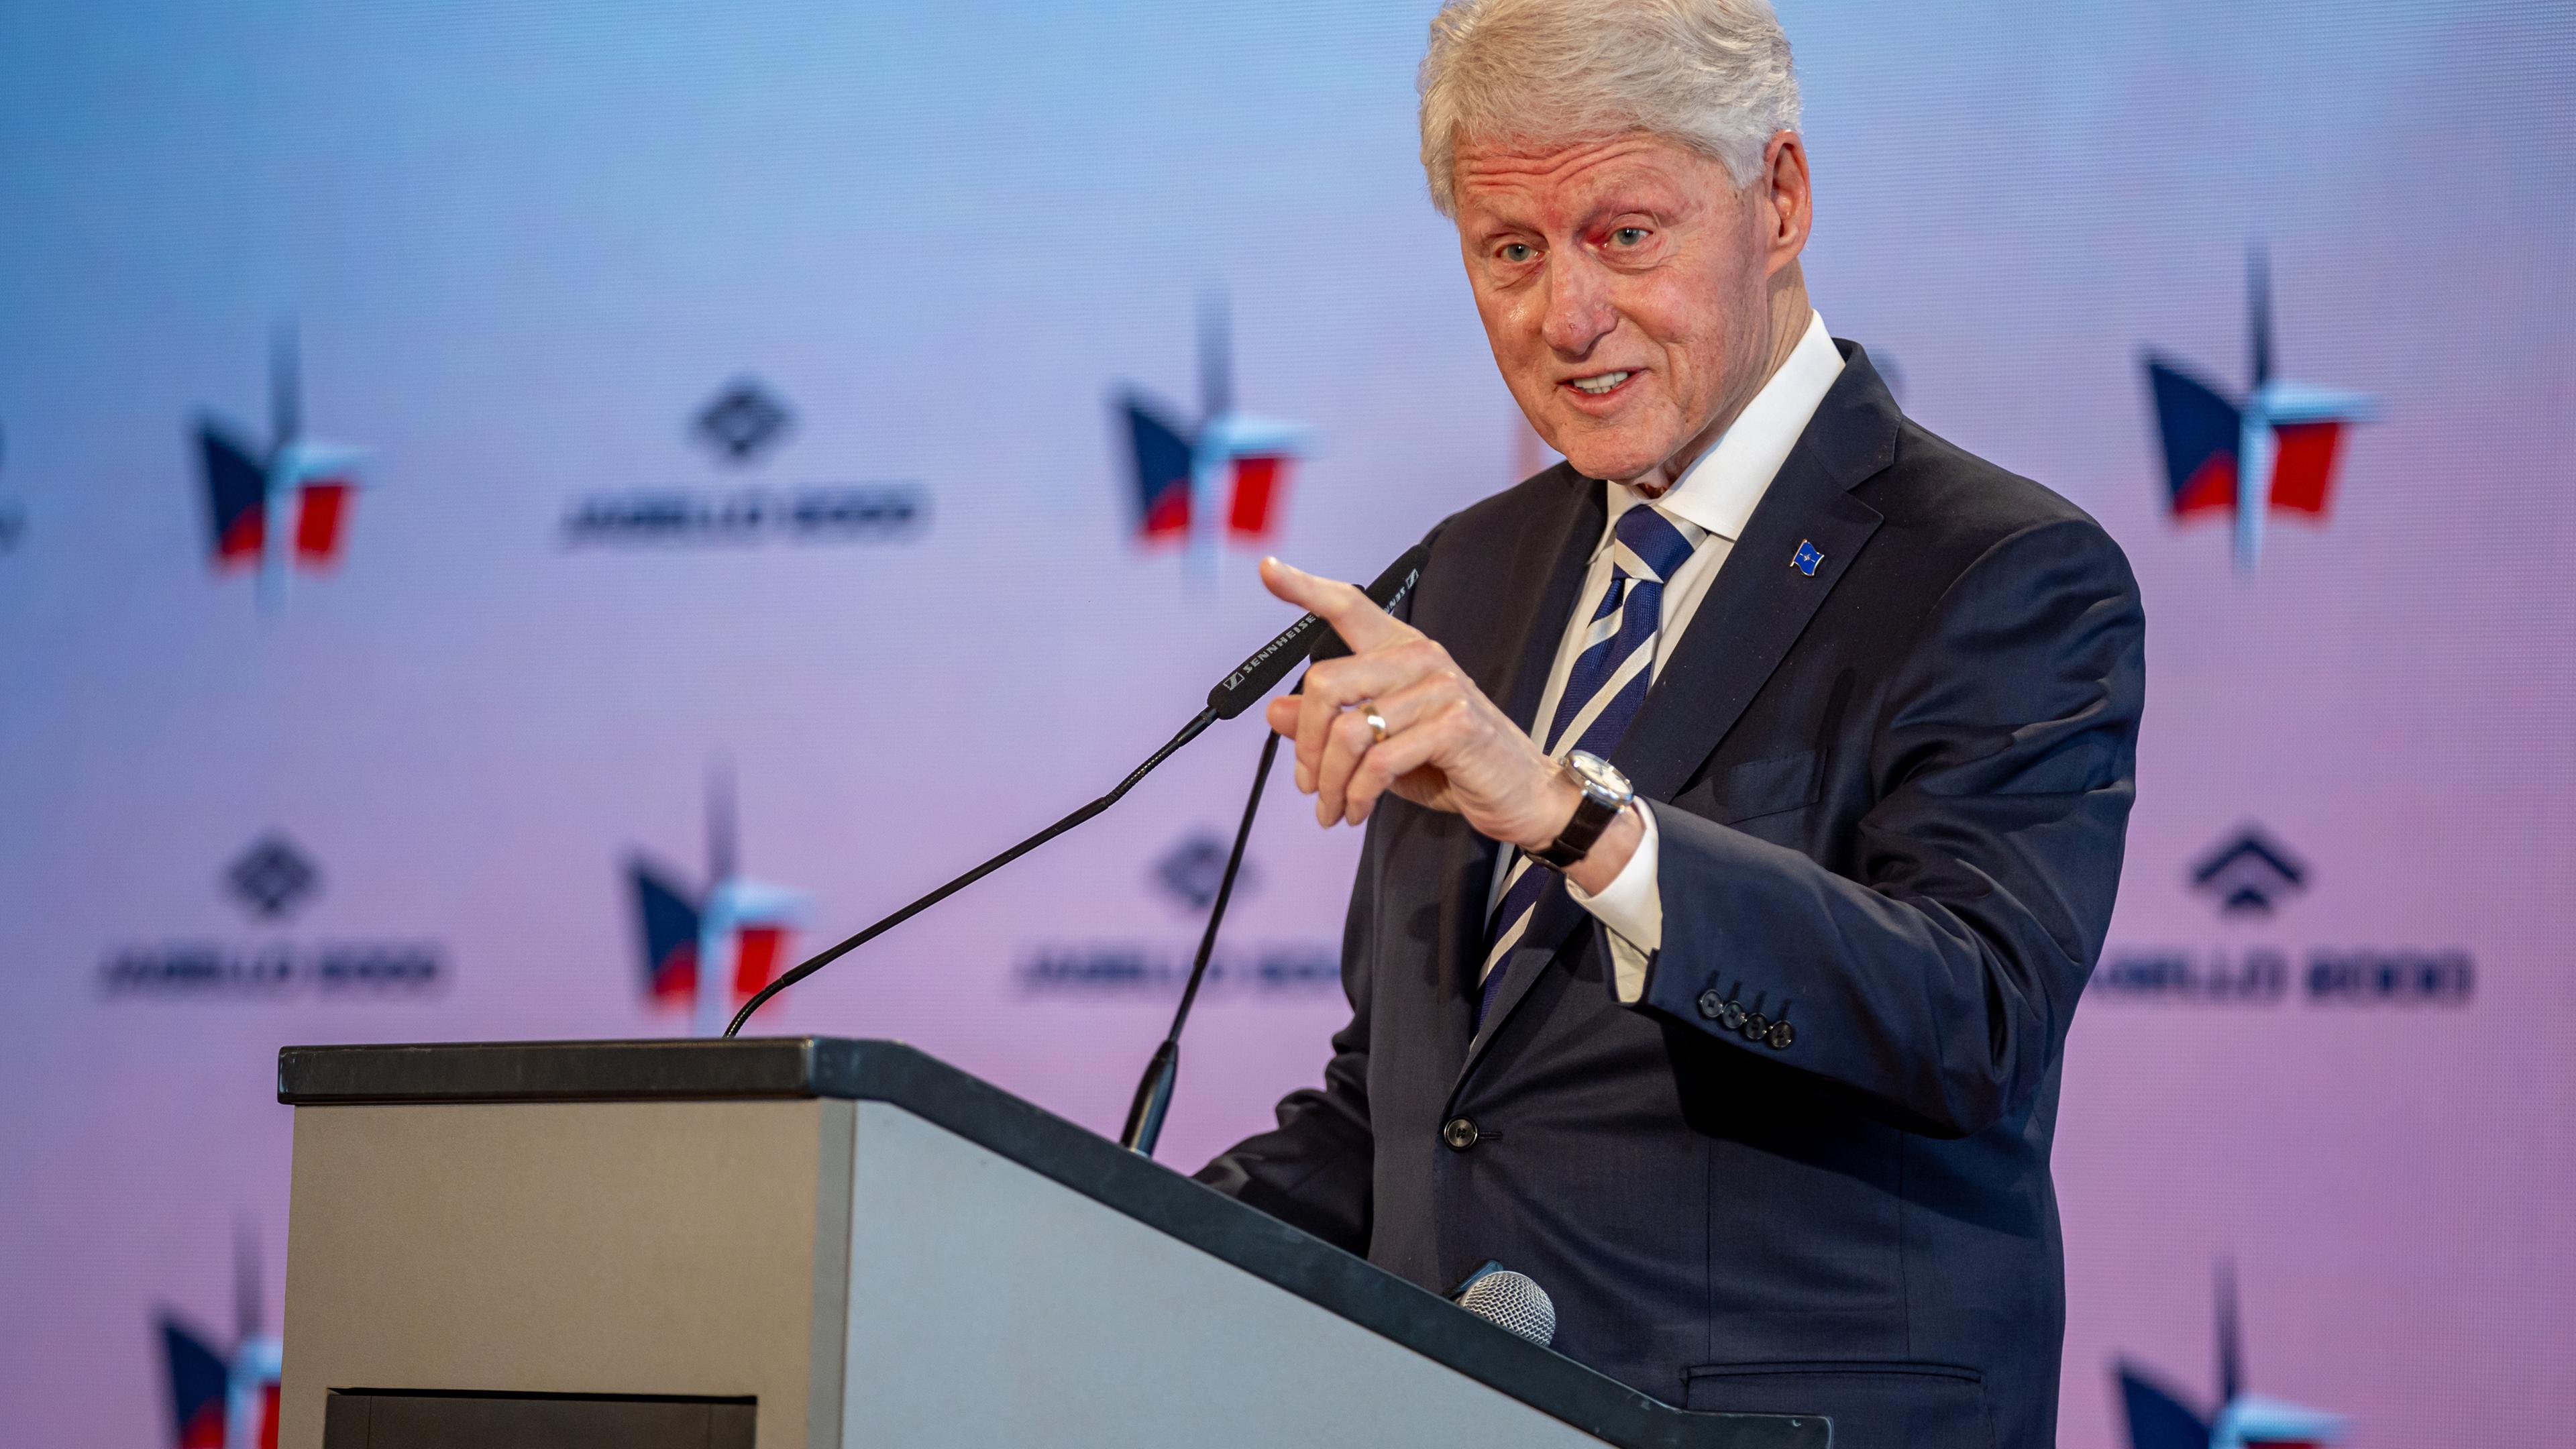 República Checa, Praga: el ex presidente estadounidense Bill Clinton pronuncia un discurso durante la conferencia de seguridad en el Castillo de Praga